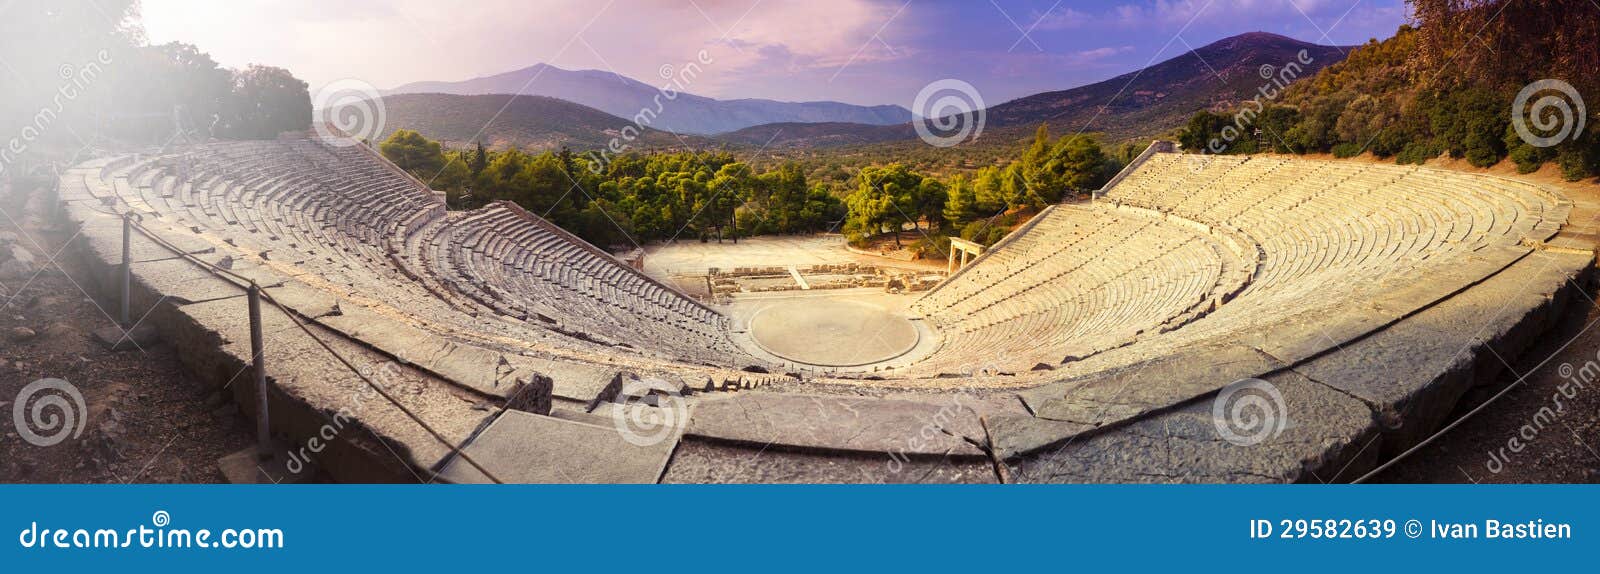 epidaurus amphitheater